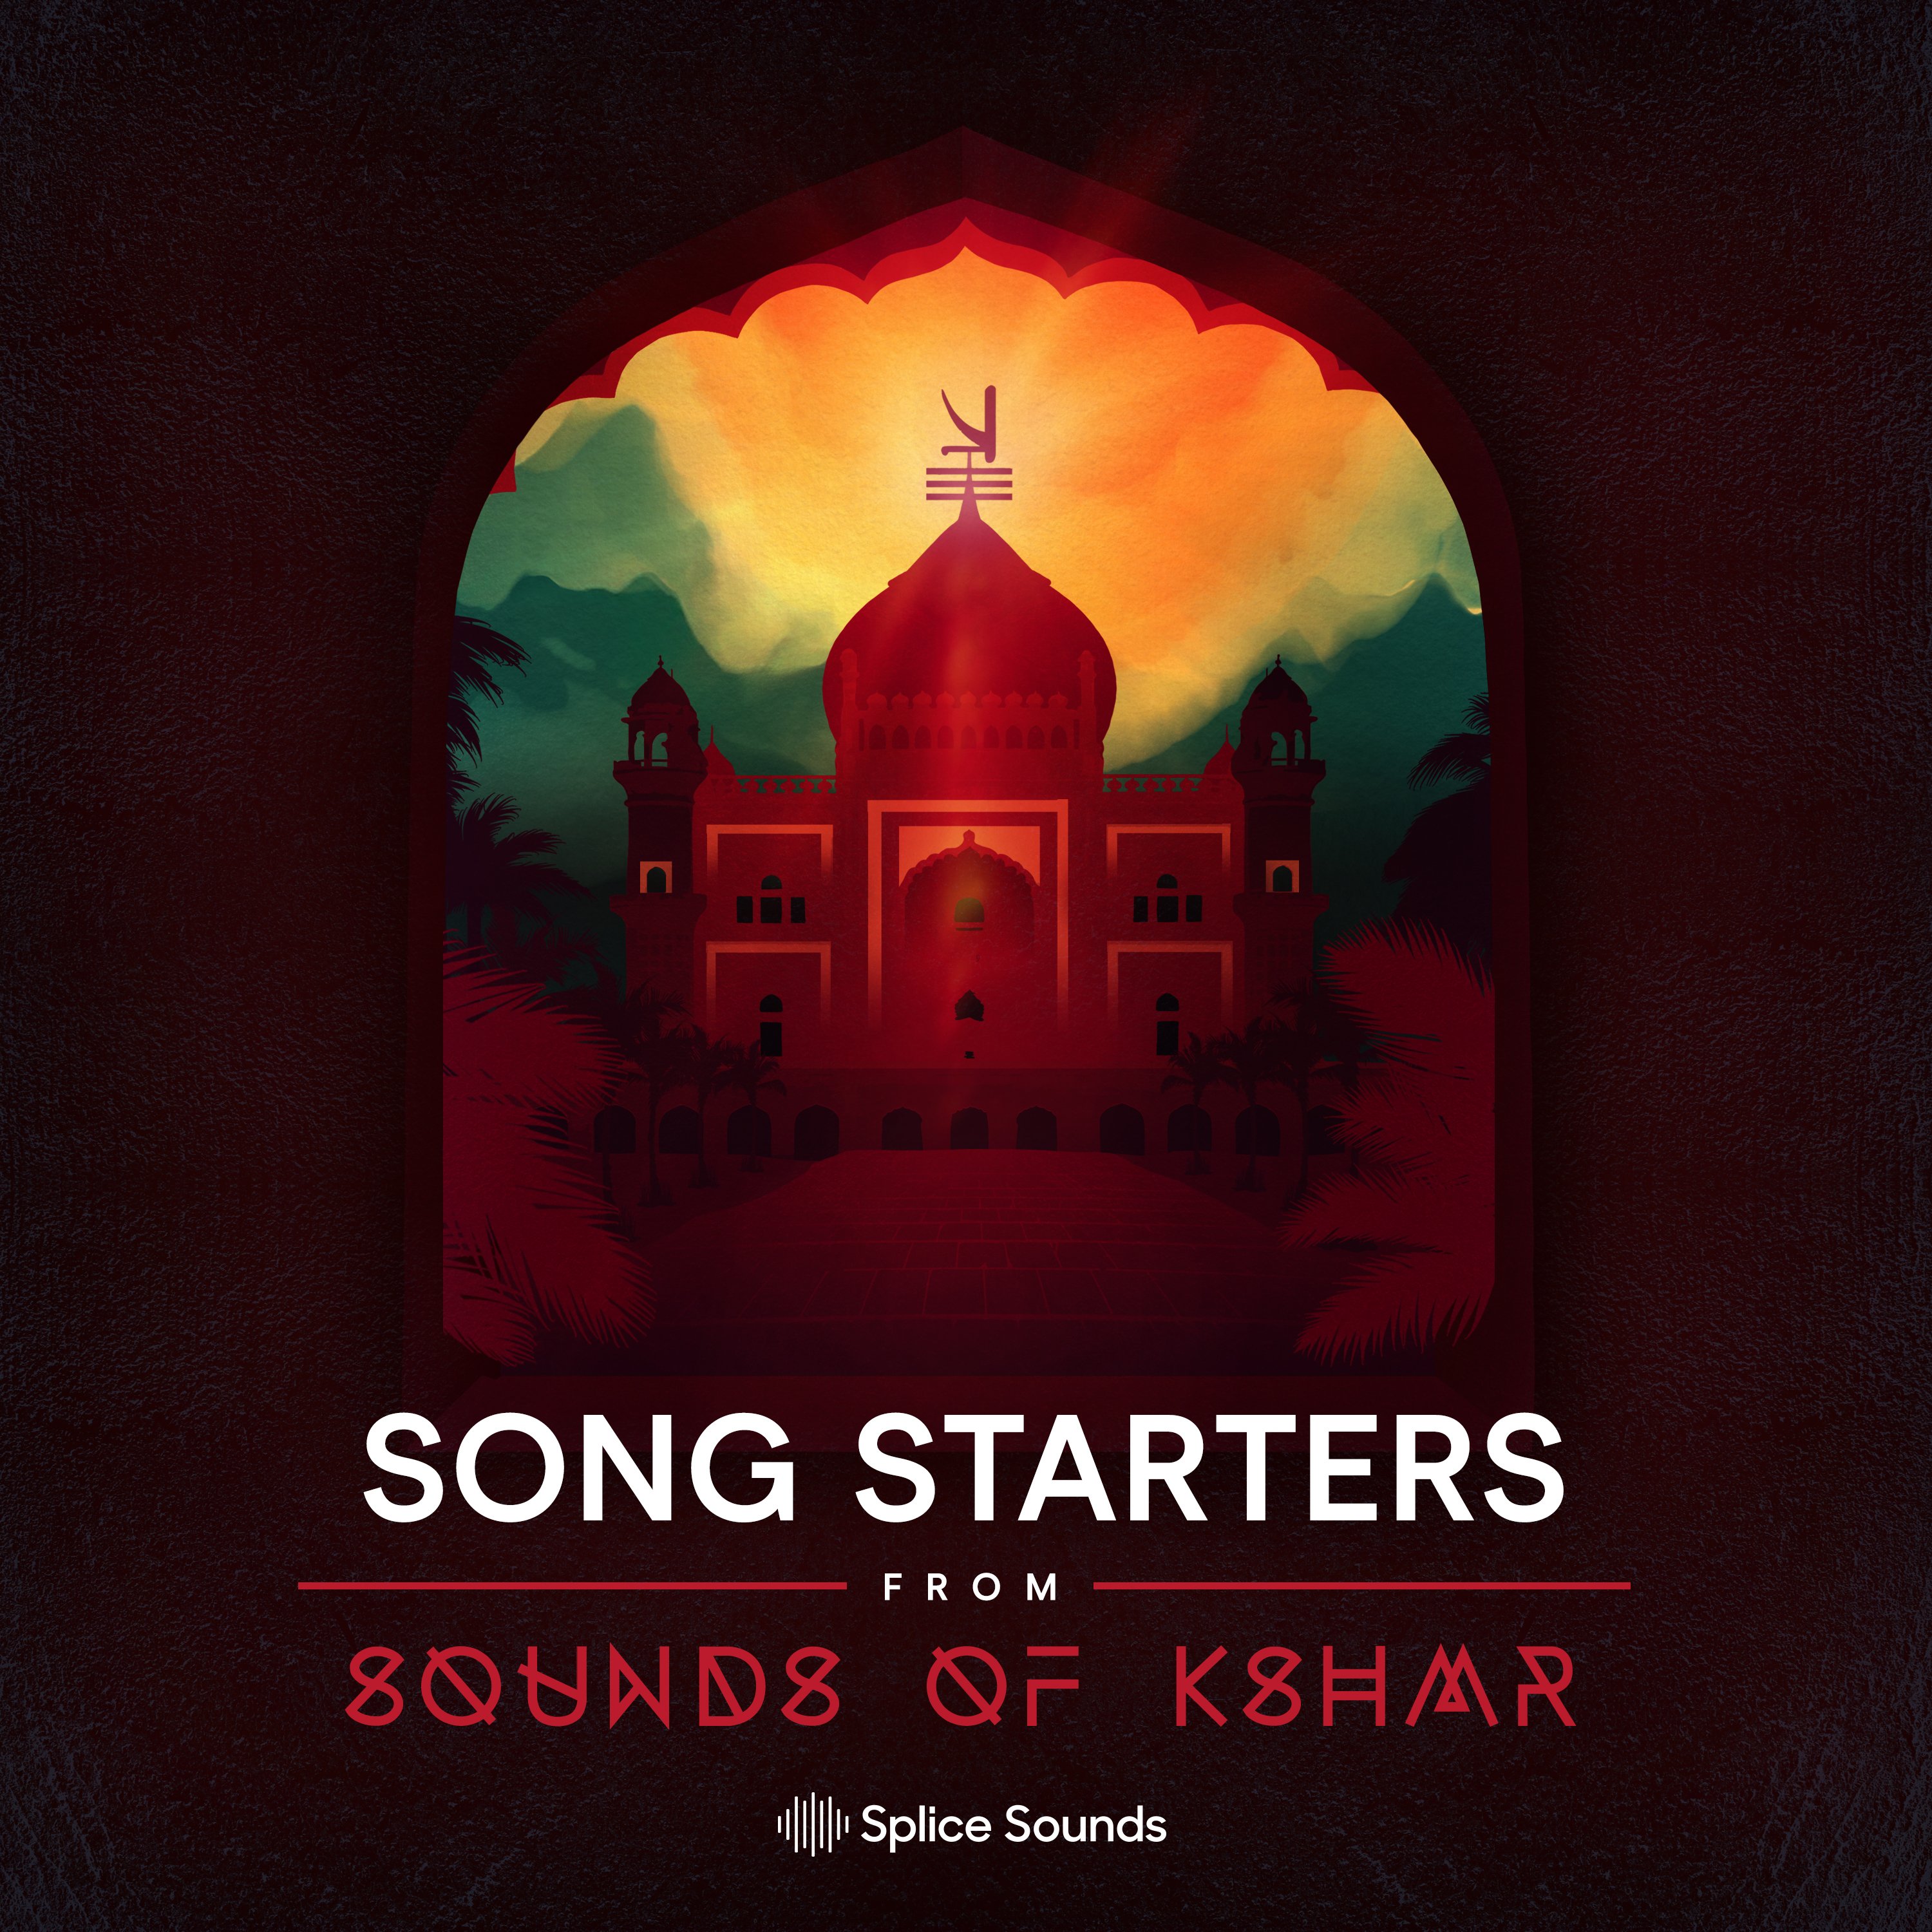 Song Starters: Sounds of KSHMR Vol 3